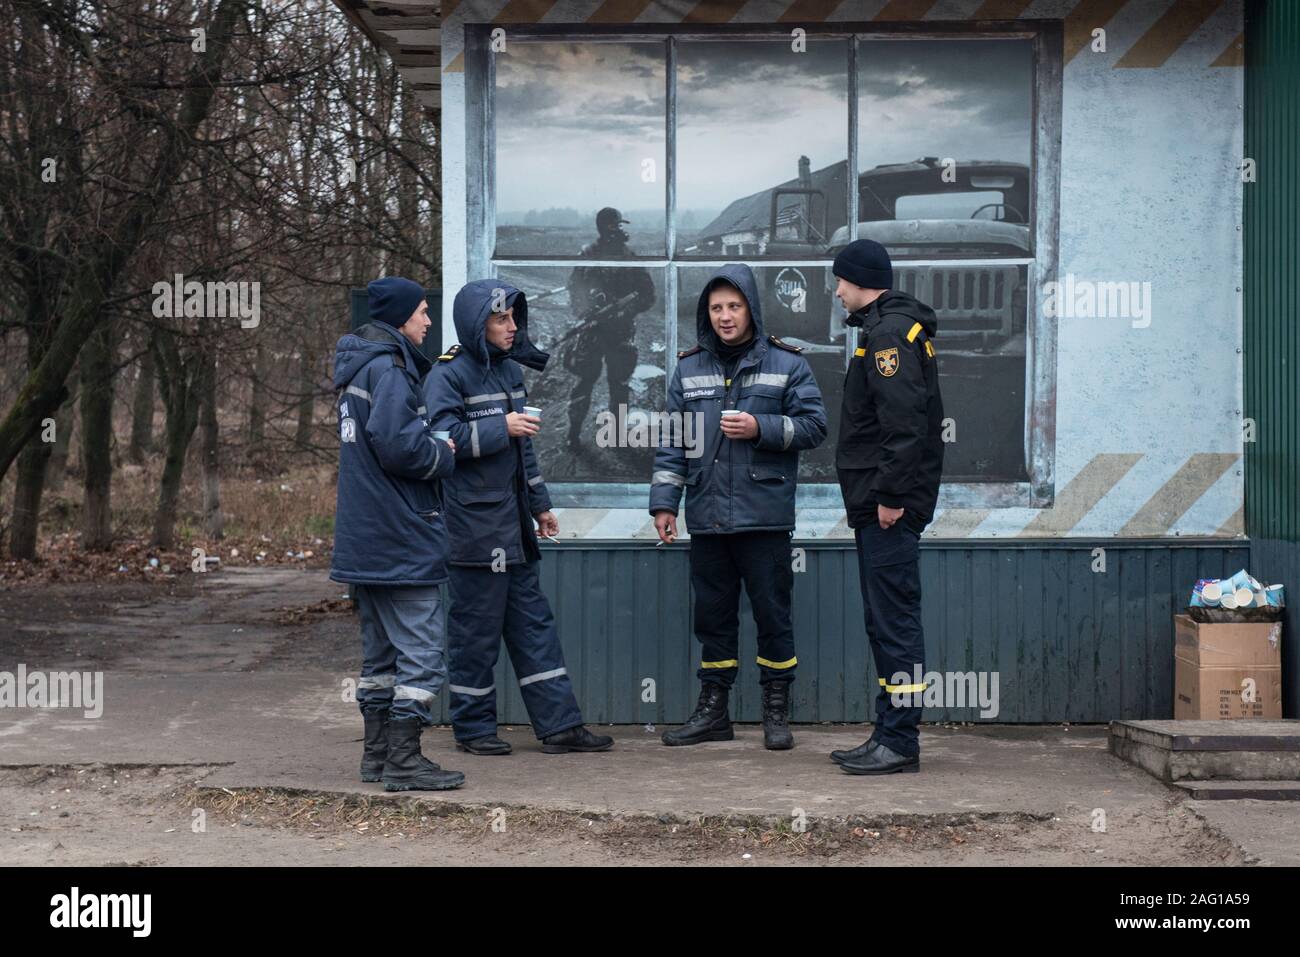 Employés de la centrale nucléaire de Tchernobyl ayant une pause-café pendant leur garde à l'extérieur d'un bar à Tchernobyl à la ville. Dans l'arrière-plan est vu une peinture murale représentant un syndic de la zone après la catastrophe nucléaire en avril 1986. Tchernobyl (ville), zone d'exclusion de Tchernobyl, Ivankiv, Kiev Kiev oblast, Ukraine, Europe de l'Est Banque D'Images